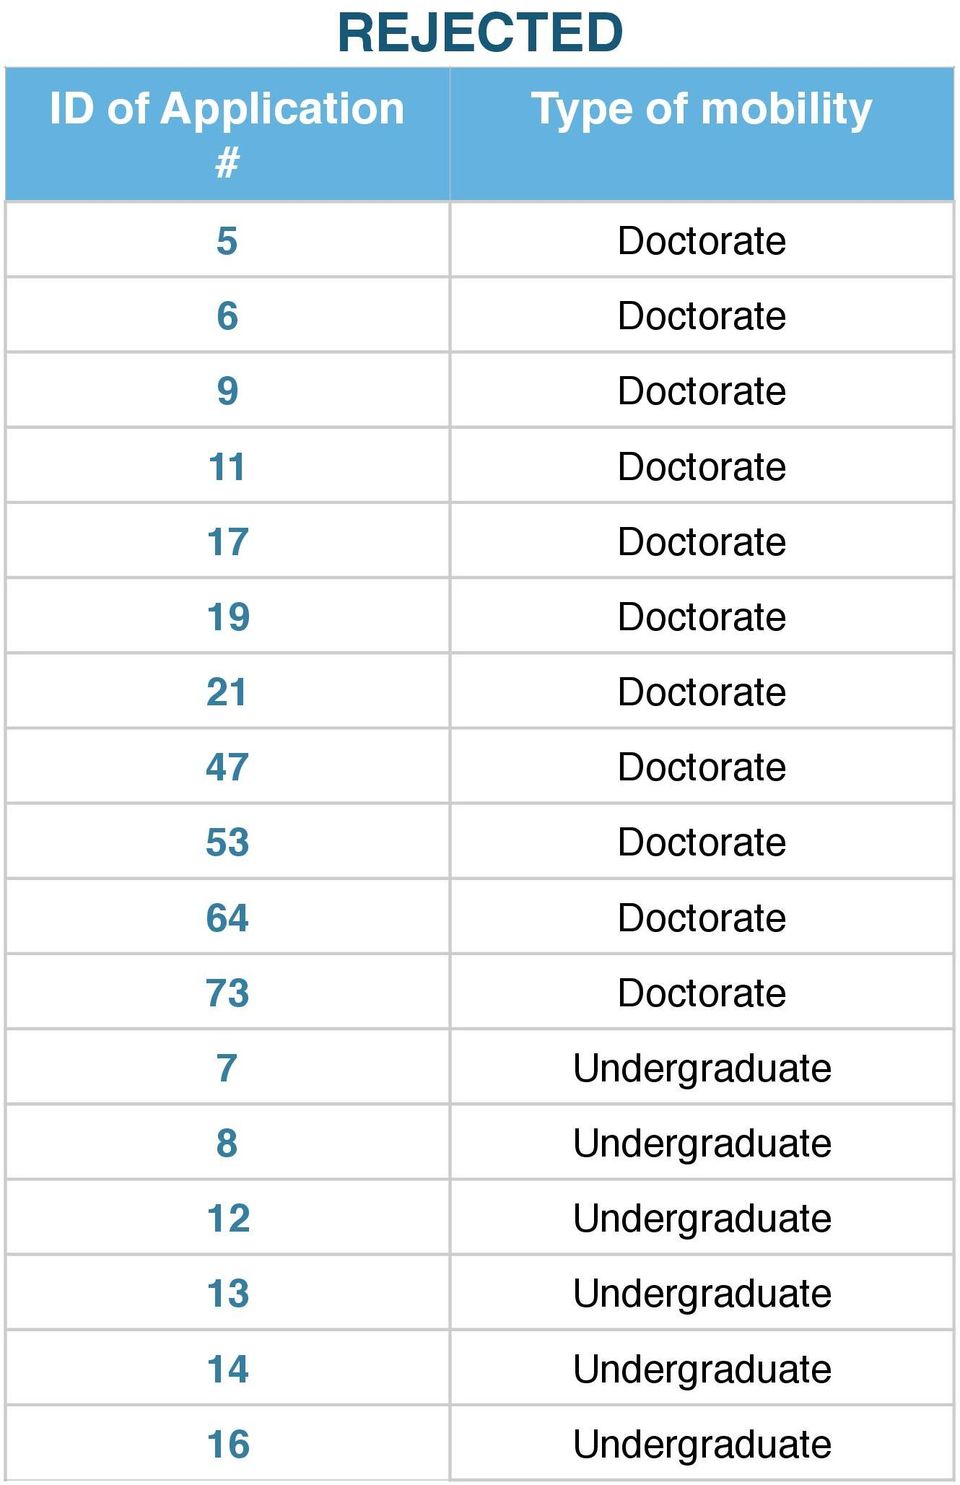 Doctorate 64 Doctorate 73 Doctorate 7 Undergraduate 8